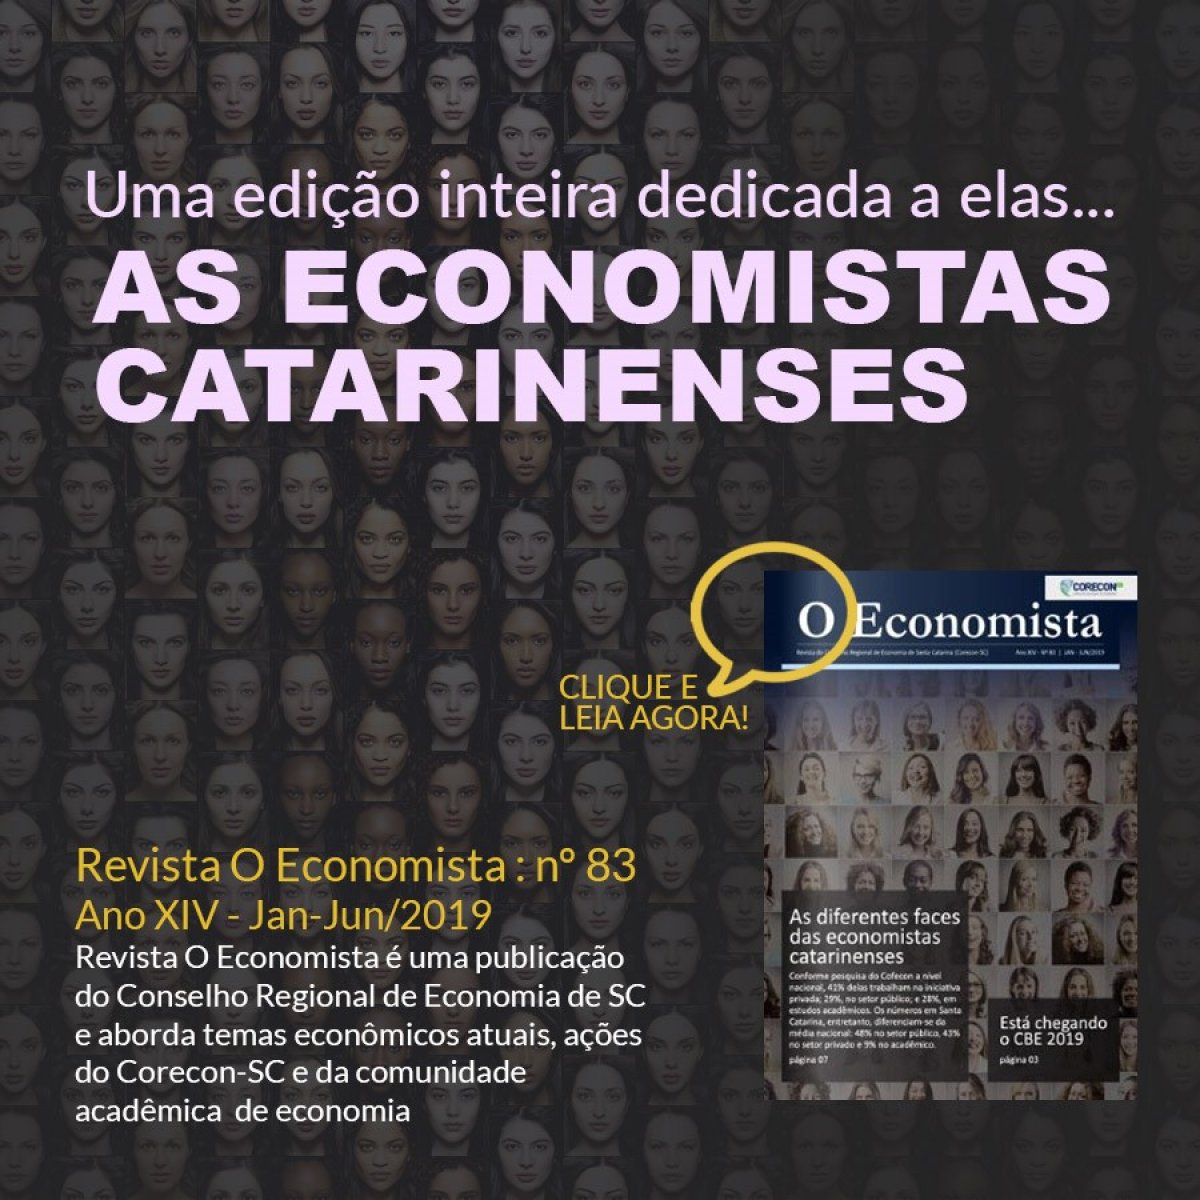 Corecon lança nova edição digital da revista O Economista - Corecon/SC